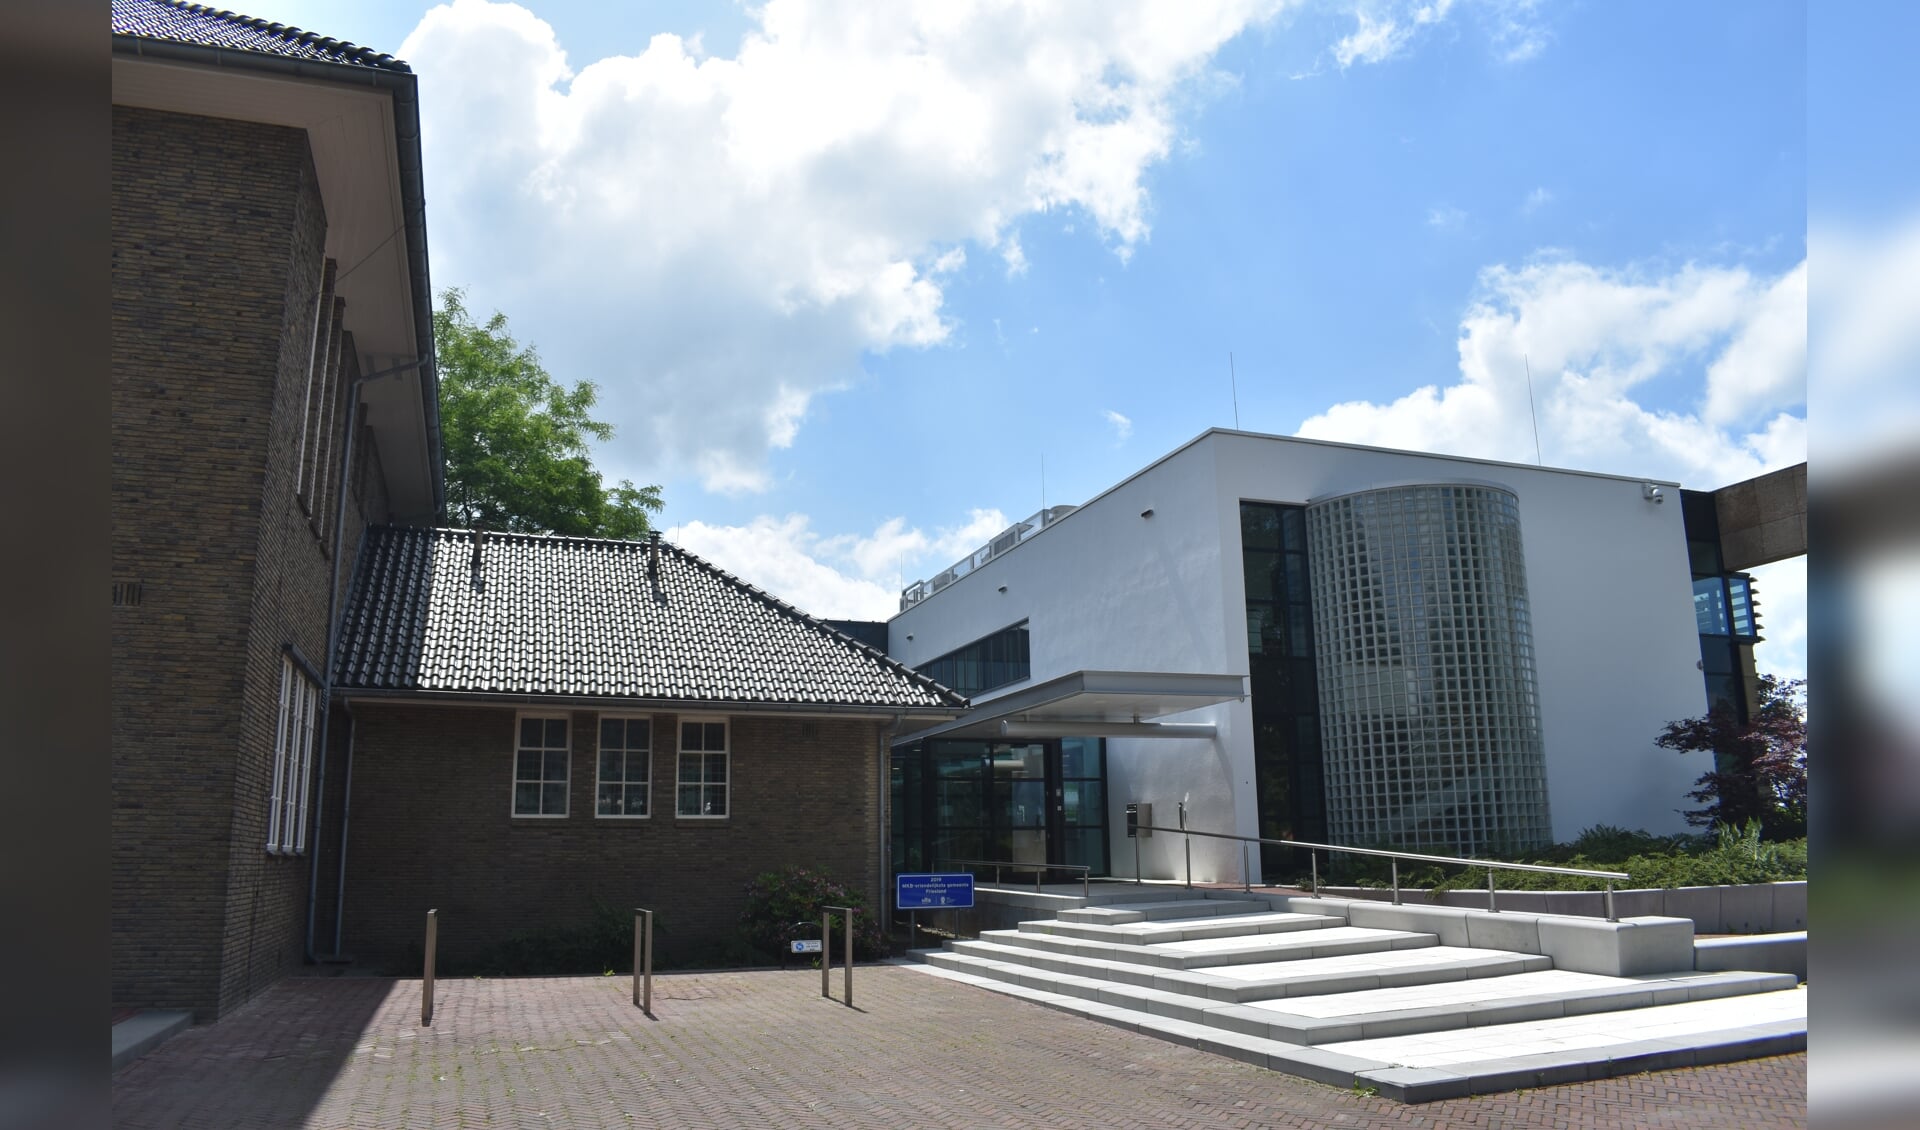 Het gemeentehuis van Tytsjerksteradiel in Burgum. Men hoeft er echter niet naar toe om de subsidie aan te vragen.